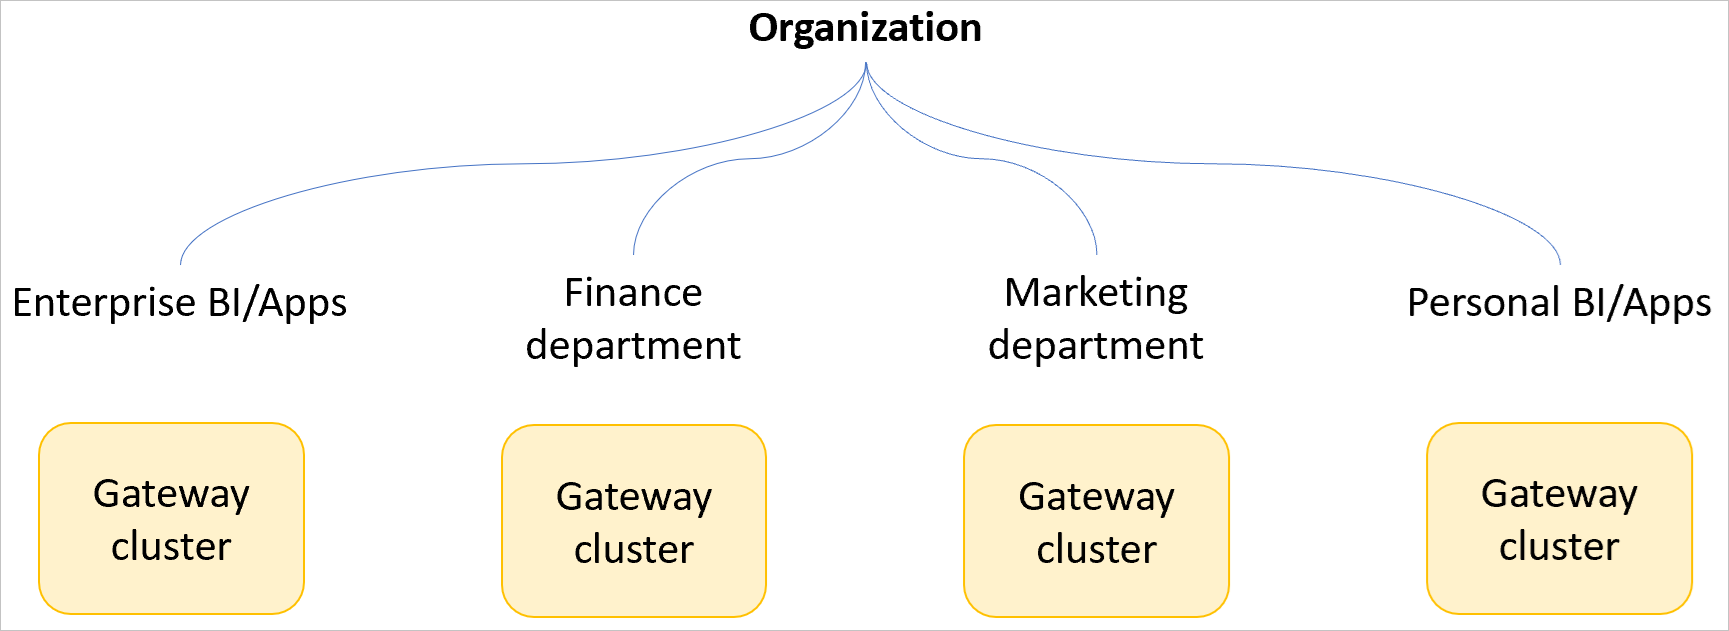 Изображение: пример организации с отдельными кластерами шлюзов для корпоративной бизнес-аналитики и приложений, финансовый отдел, отдел маркетинга и личная бизнес-аналитика и приложения.